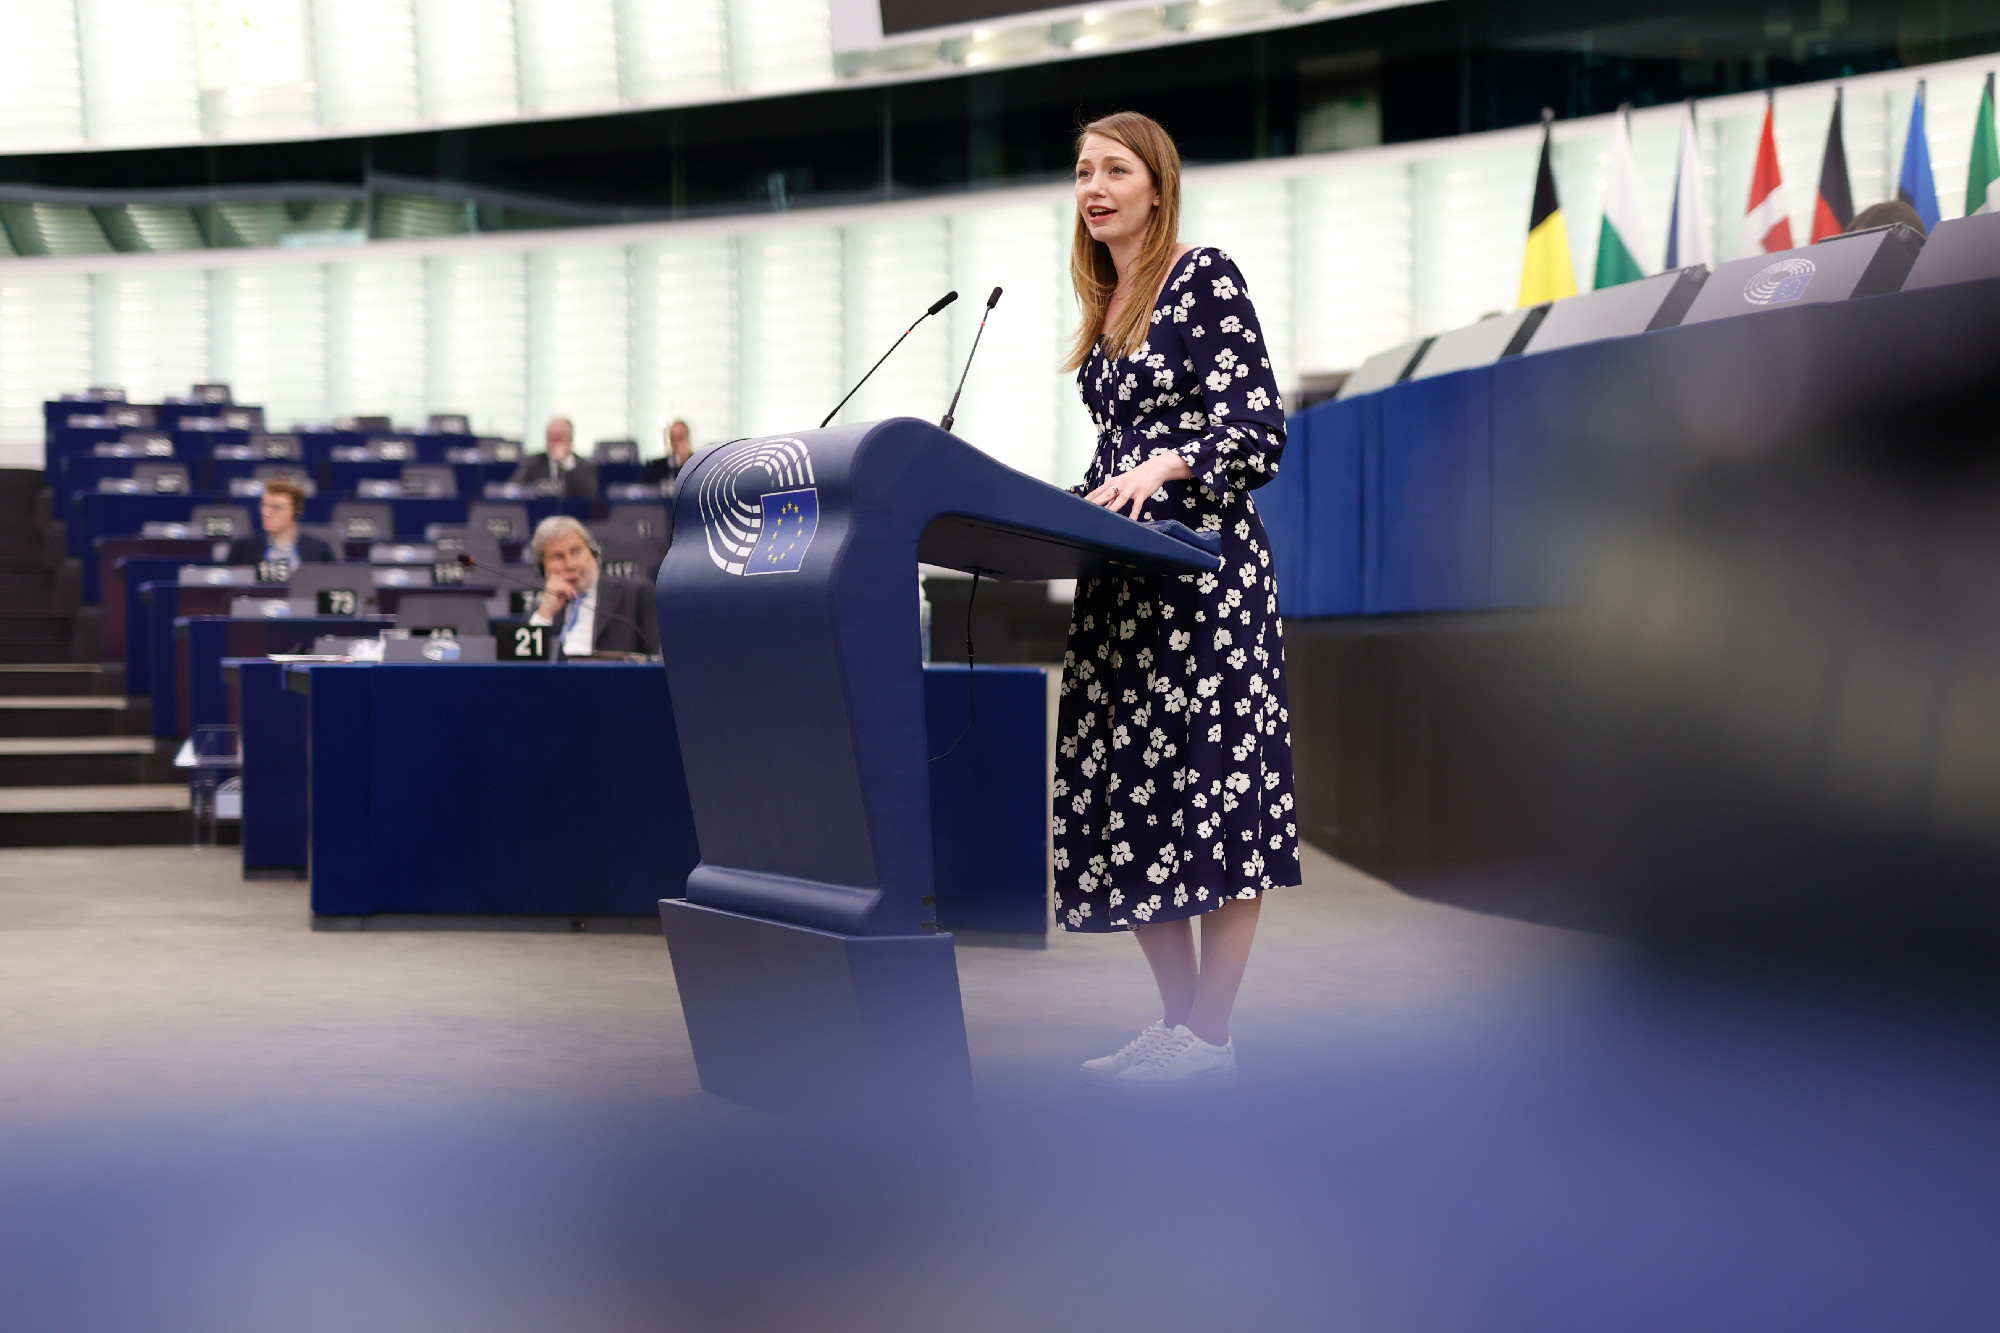 Pegasus-ügy: Varga Judit uniós meghallgatását kezdeményezi az ellenzék